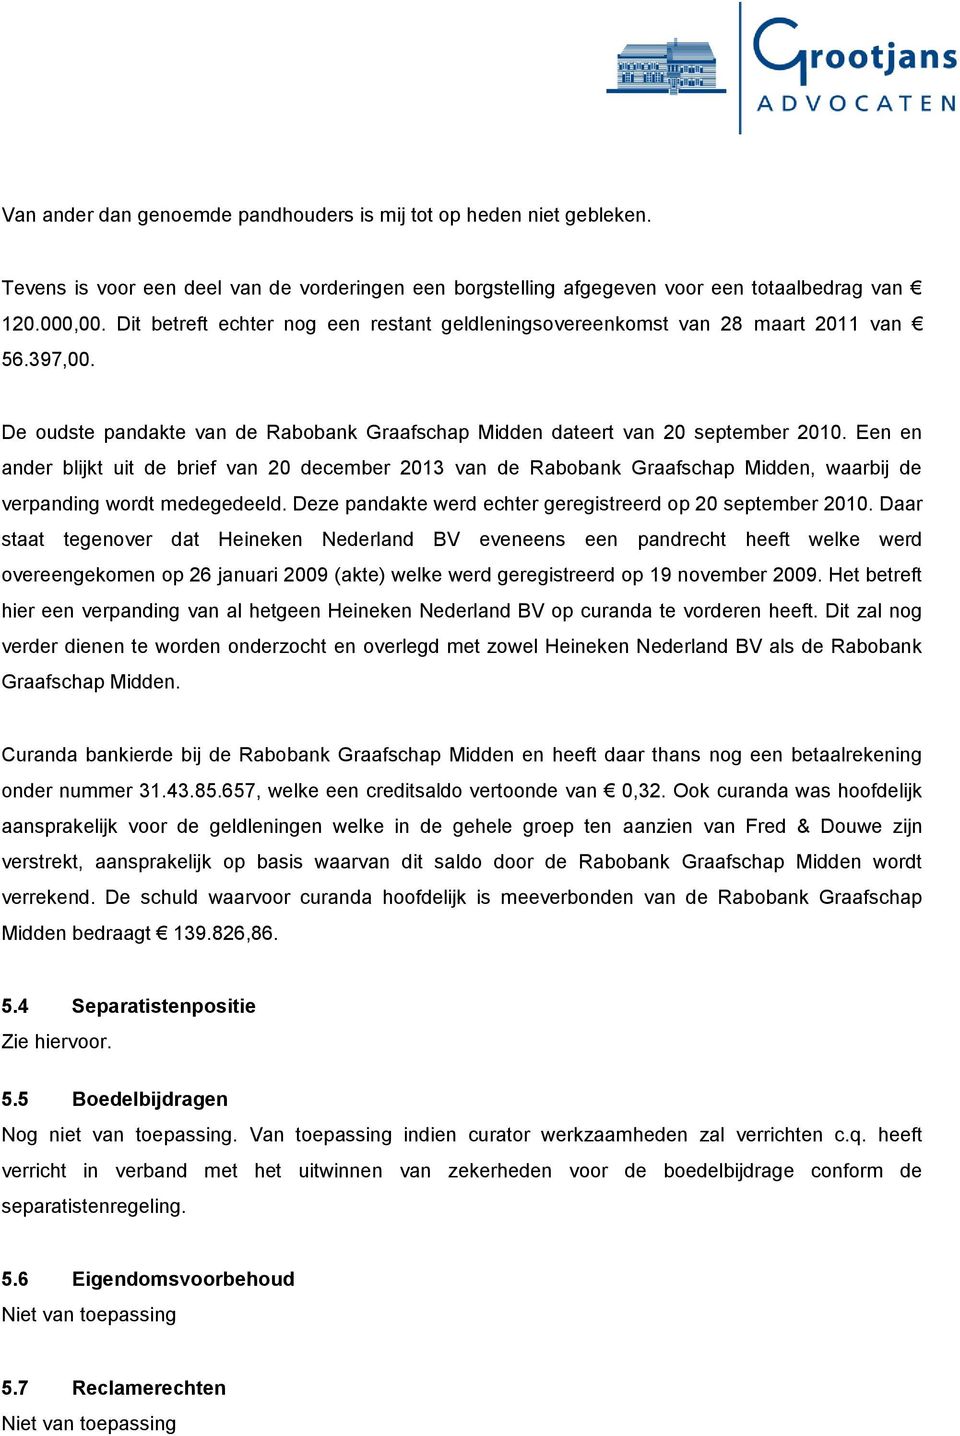 Een en ander blijkt uit de brief van 20 december 2013 van de Rabobank Graafschap Midden, waarbij de verpanding wordt medegedeeld. Deze pandakte werd echter geregistreerd op 20 september 2010.